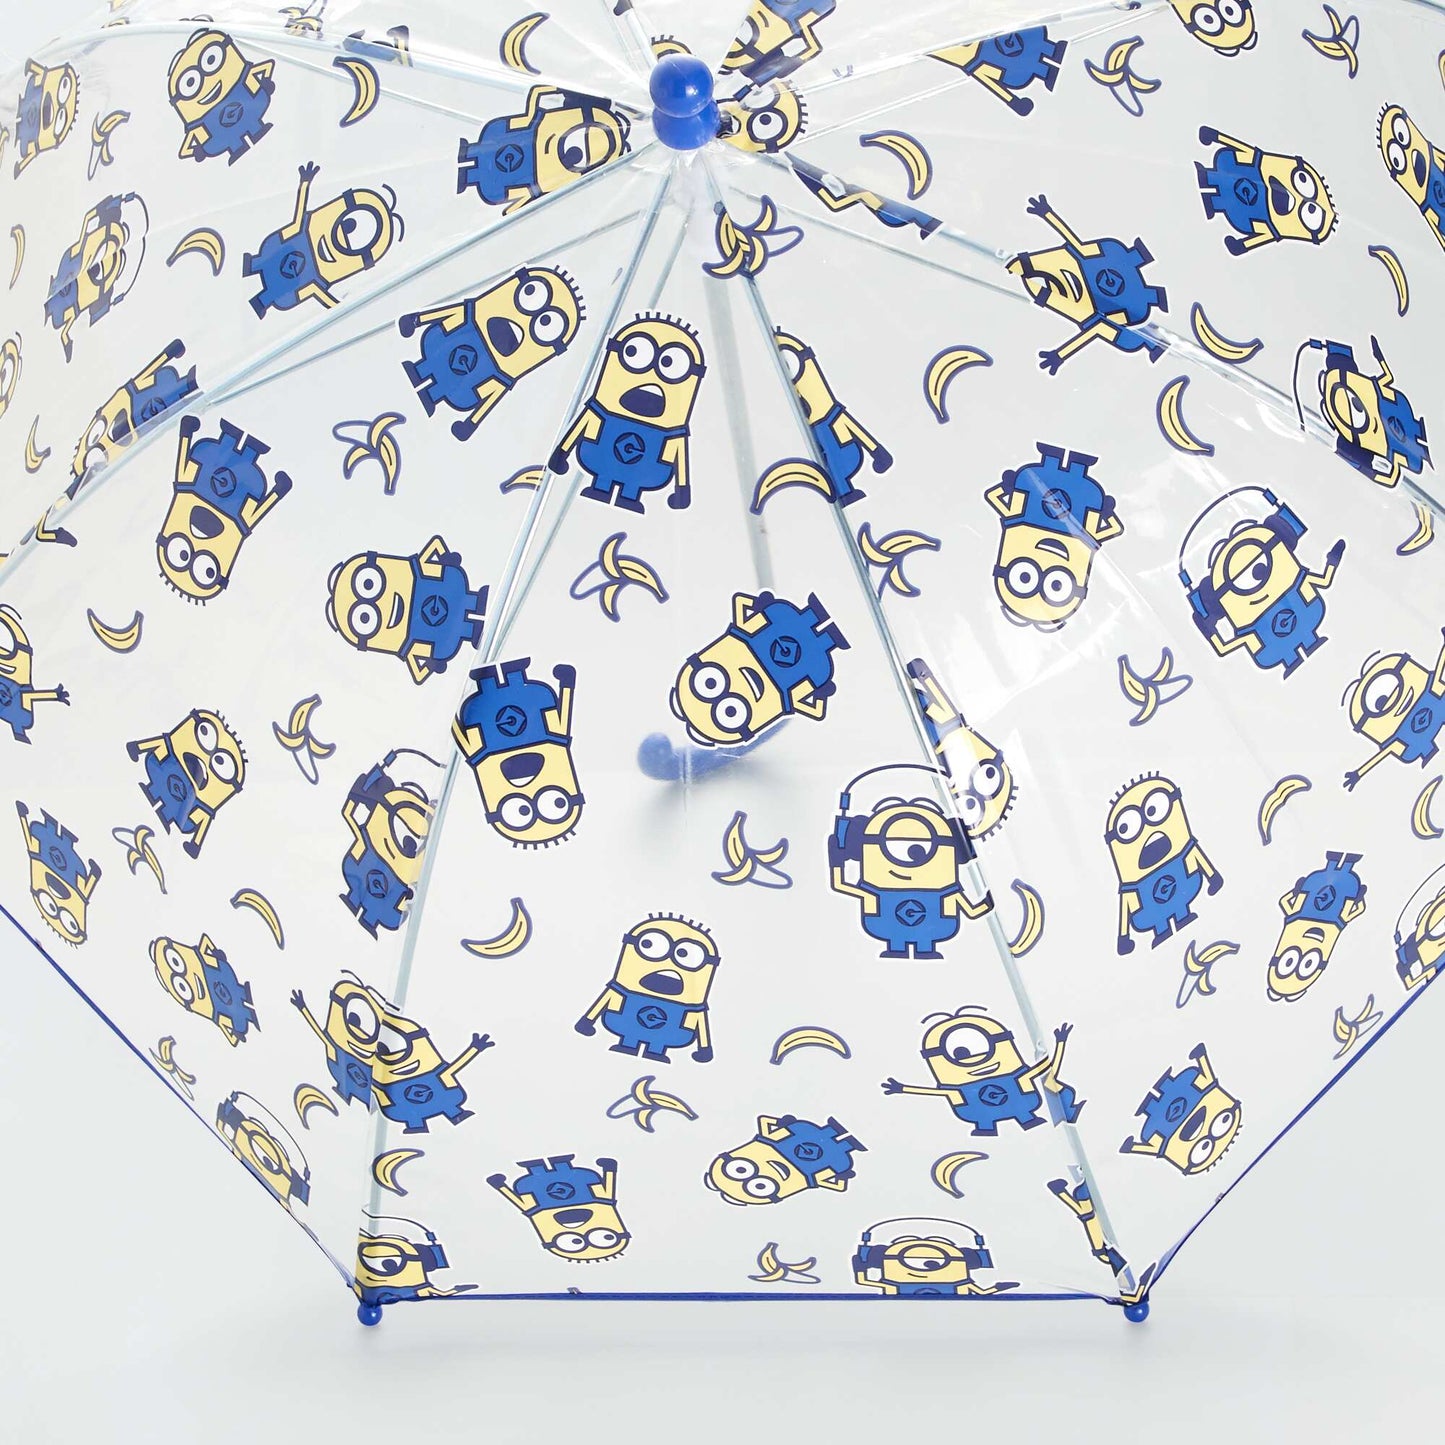 Parapluie 'Minion' Bleu